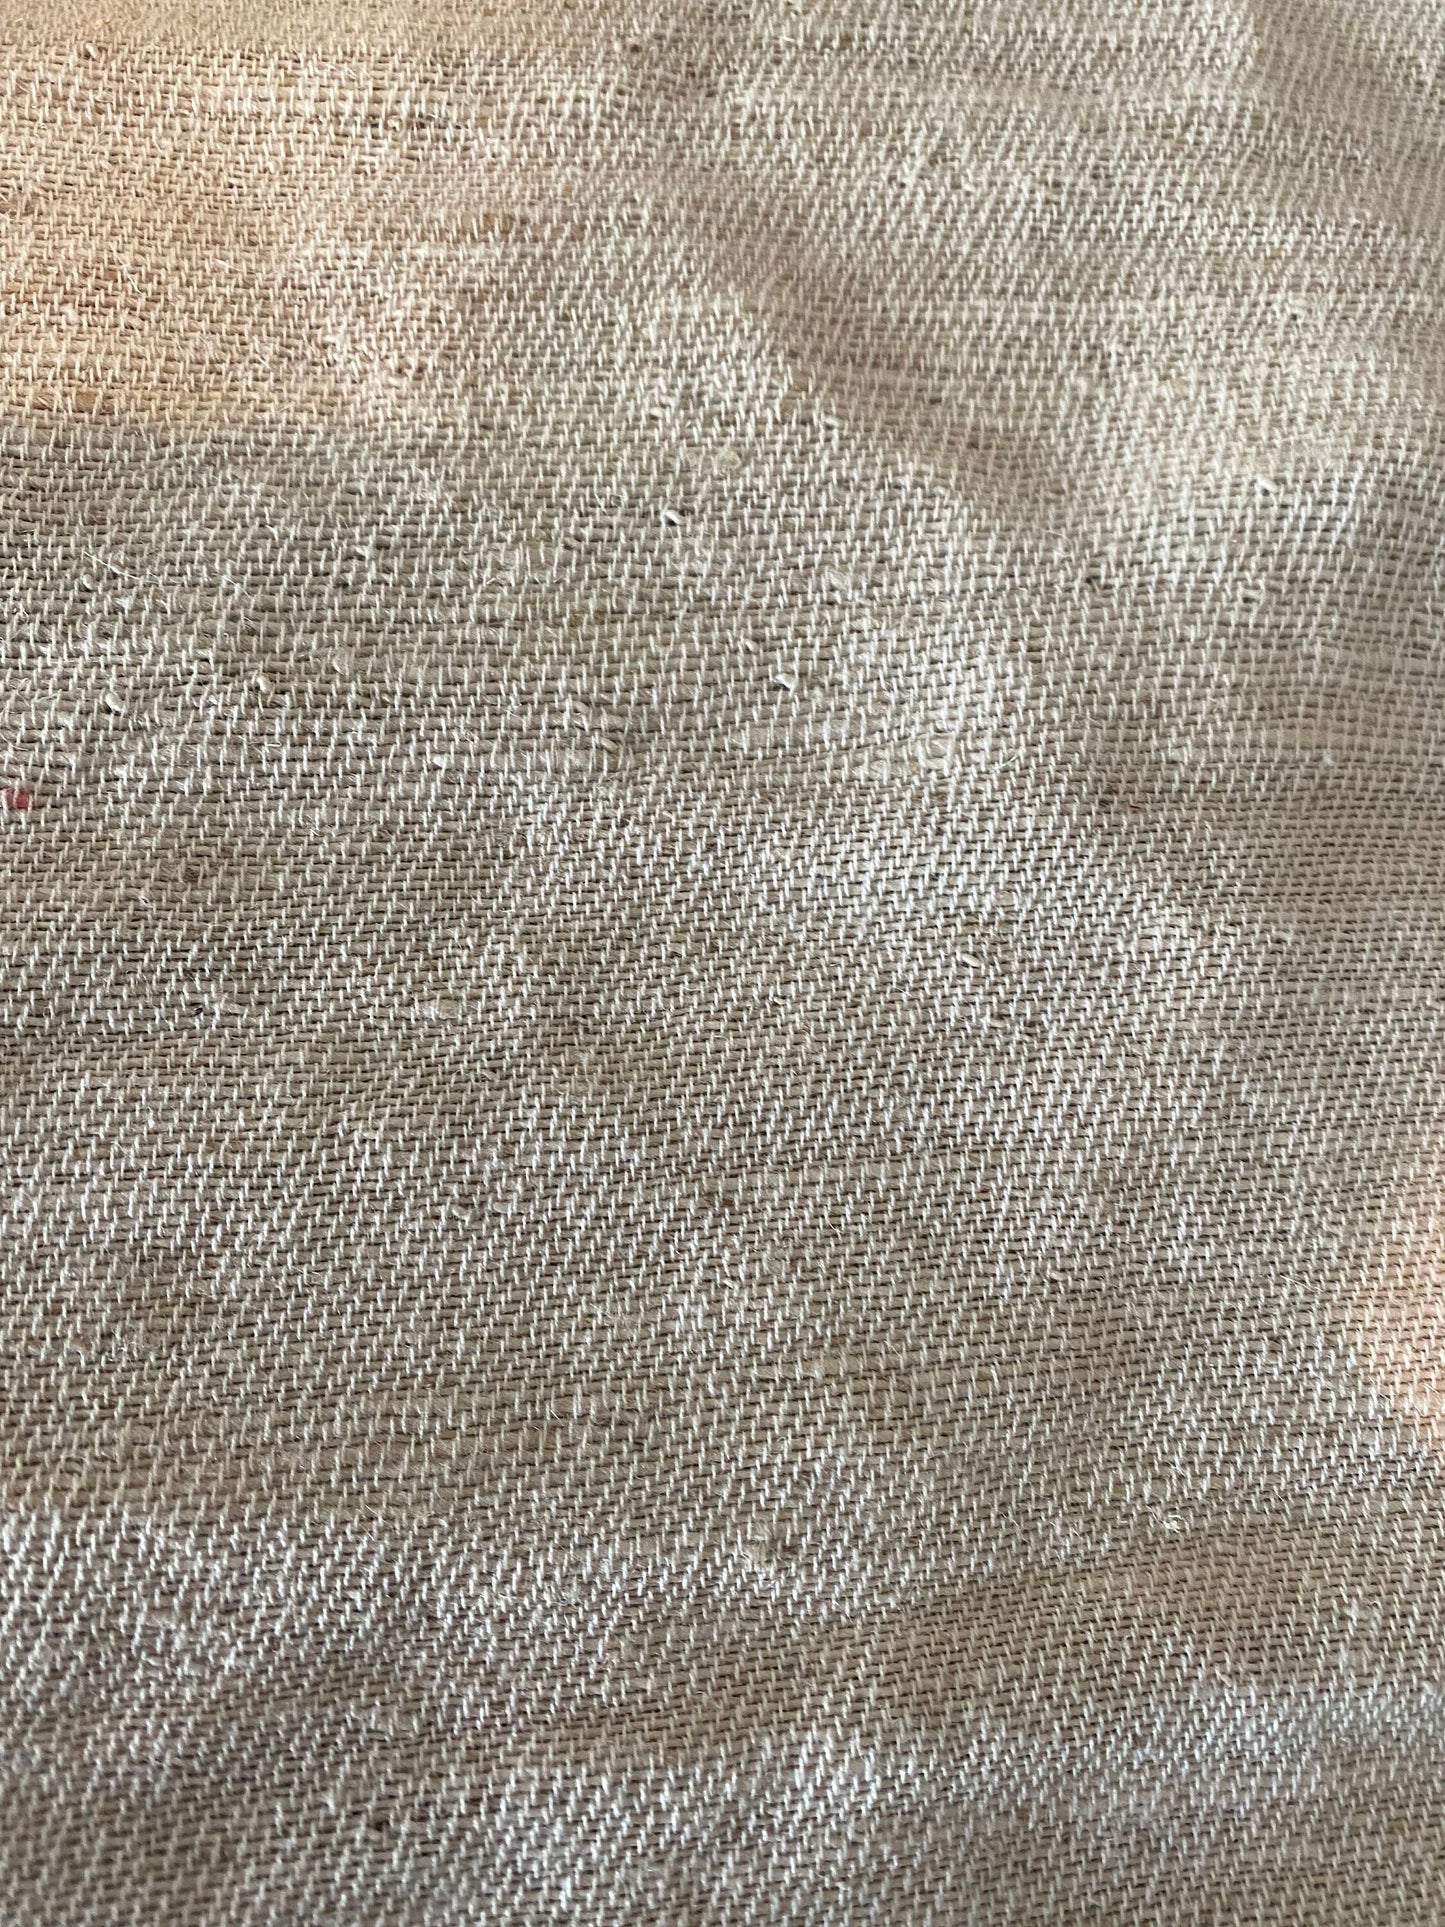 Hemp and Organic cotton cloth fabric